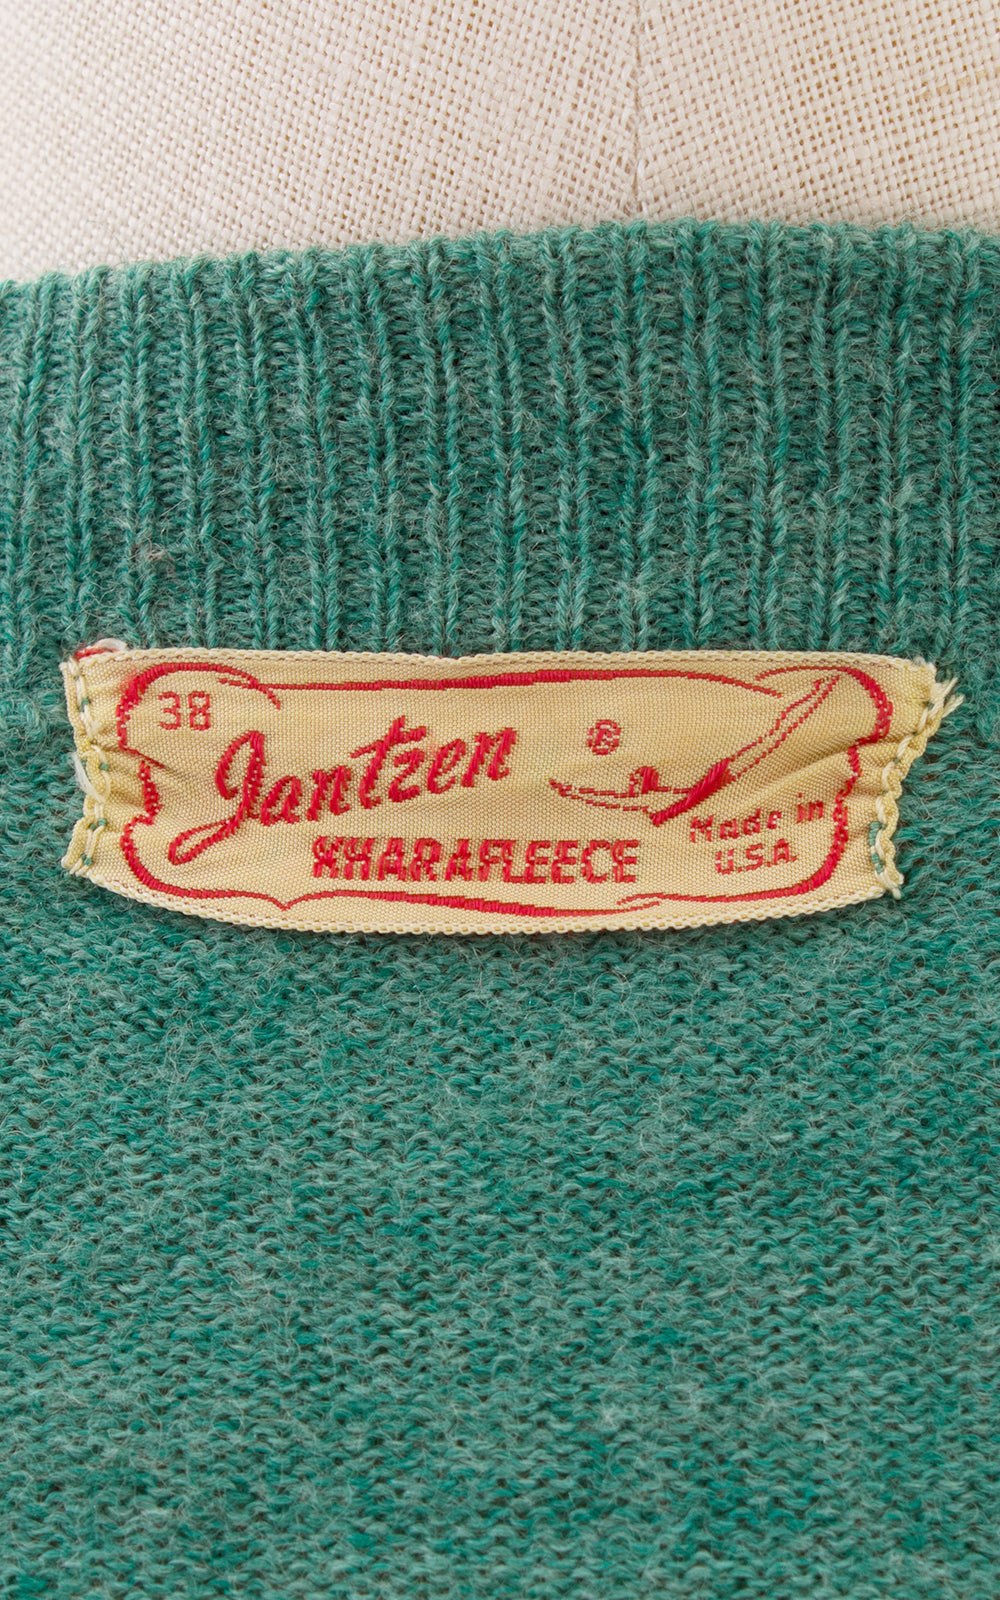 1940s Jantzen Teal Knit Wool Cardigan